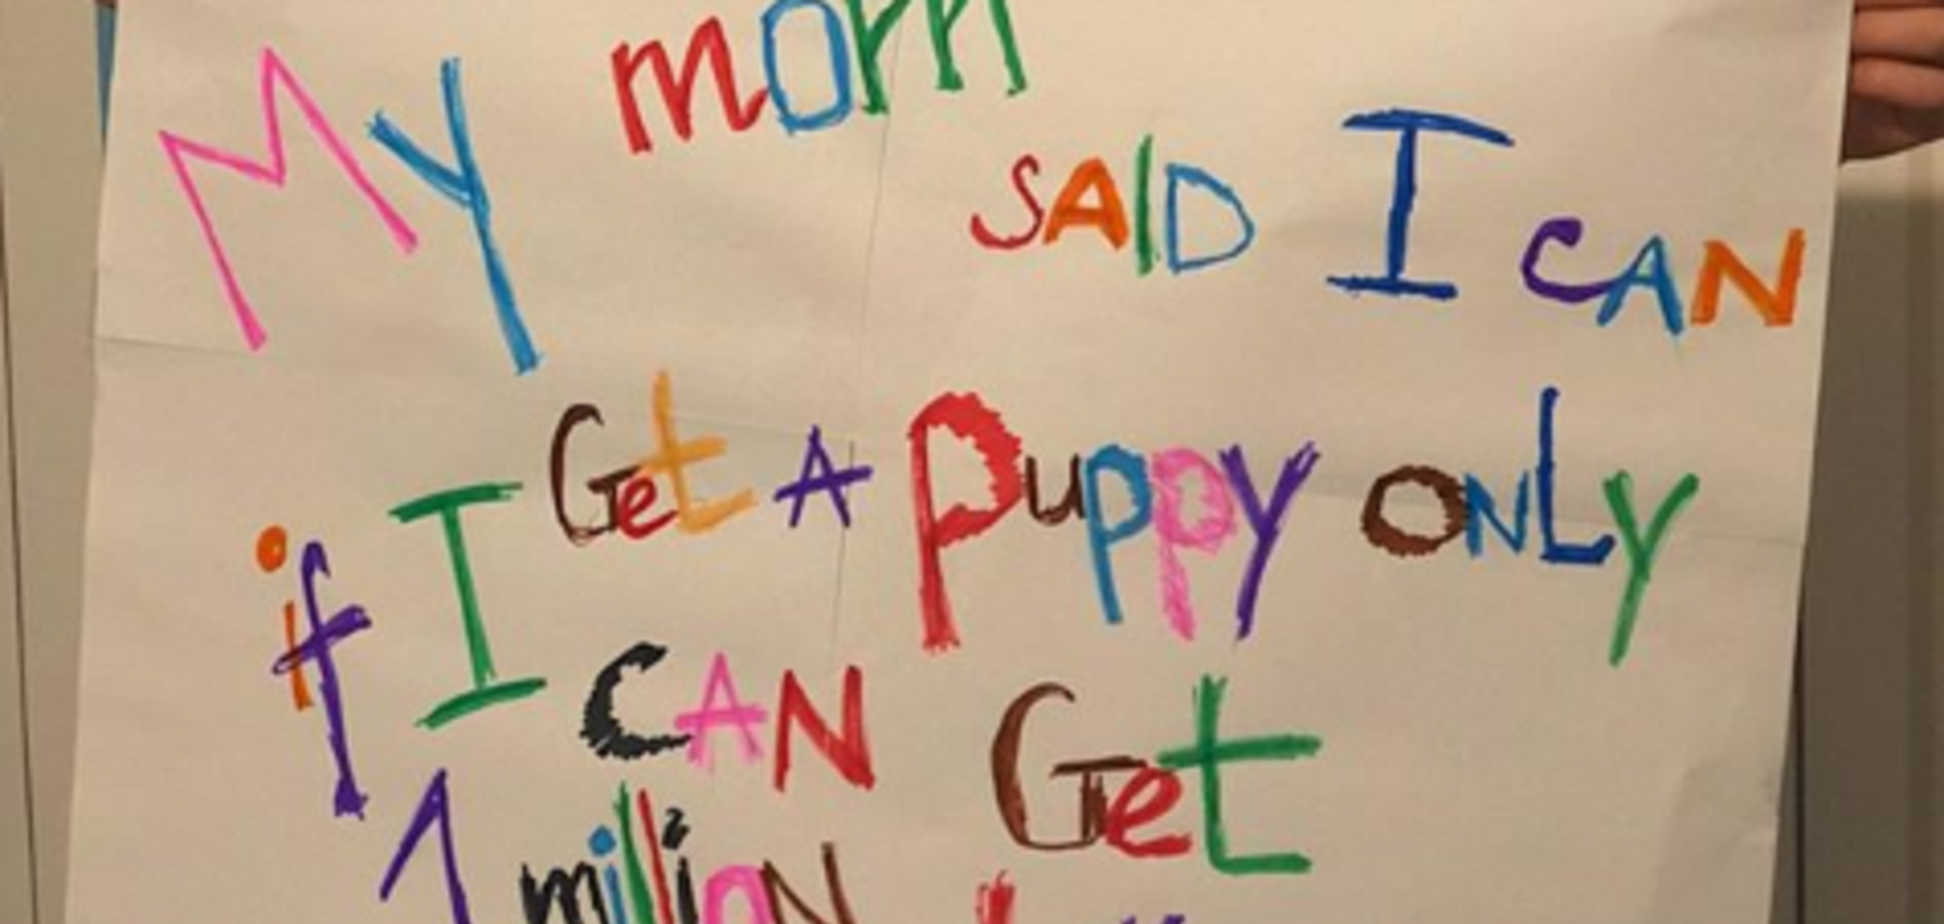 Мама пообещала школьнику з Кропивницкого собаку за миллион лайков в Instagram: что из этого получилось